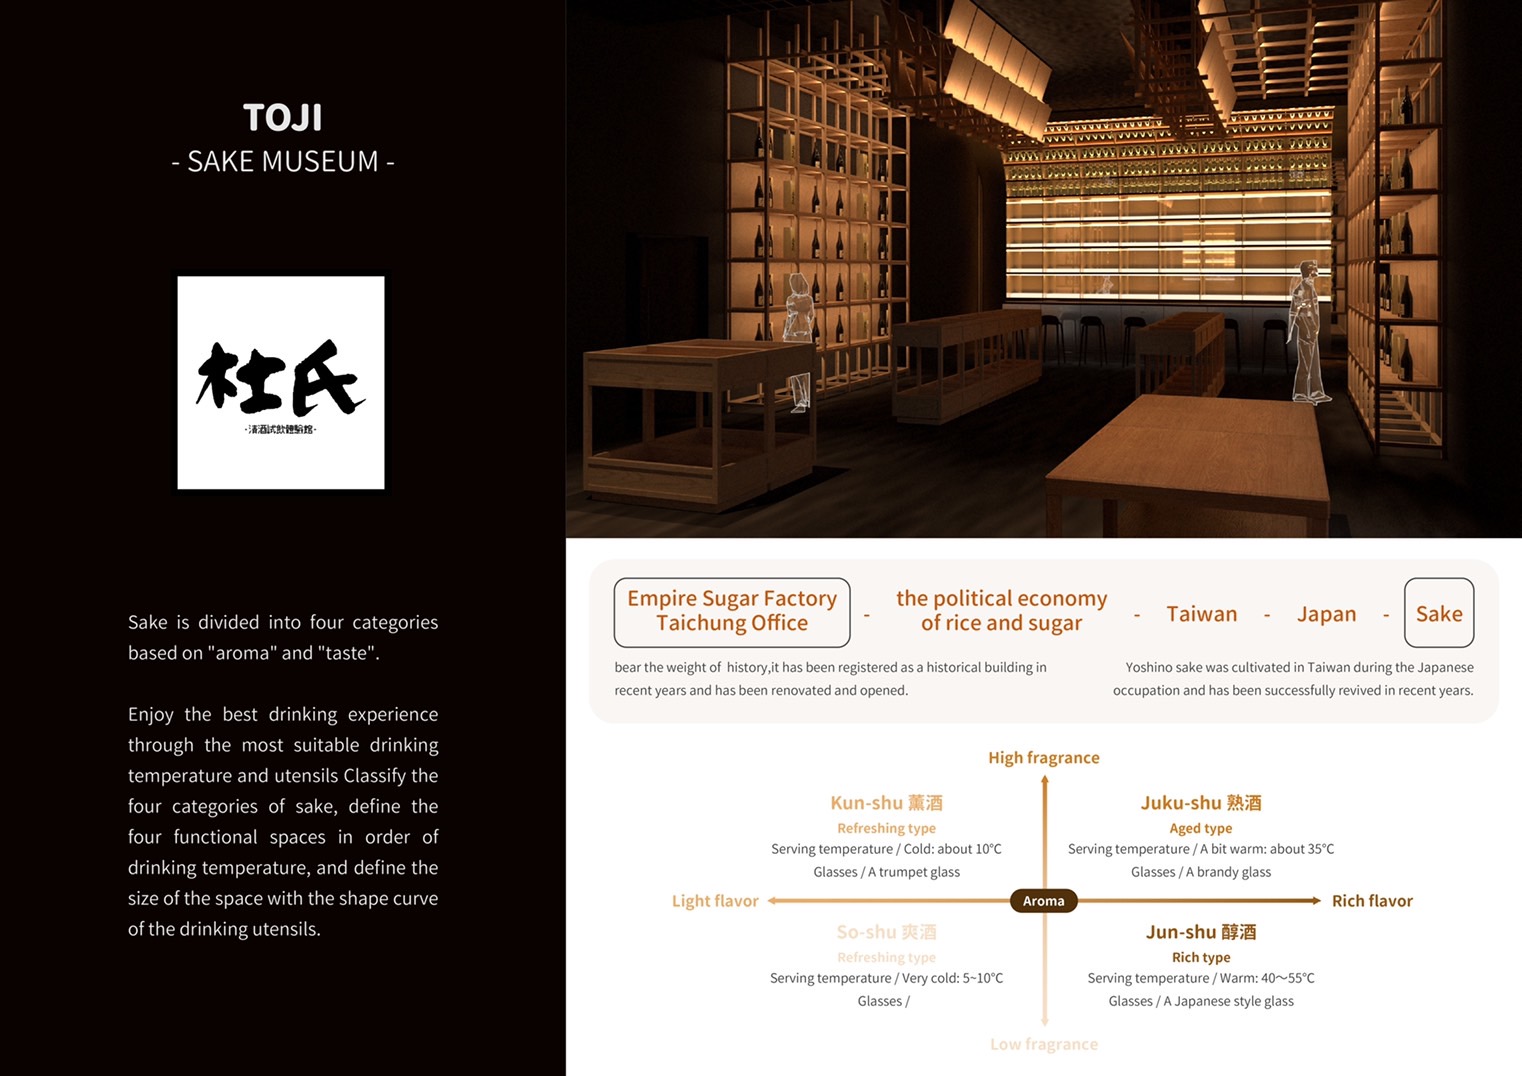 圖為李耘萱同學的「TOJI-SAKE MUSEUM」作品，獲「2022美國建築大師獎」(AMP)的「商業室內設計類」優勝獎。